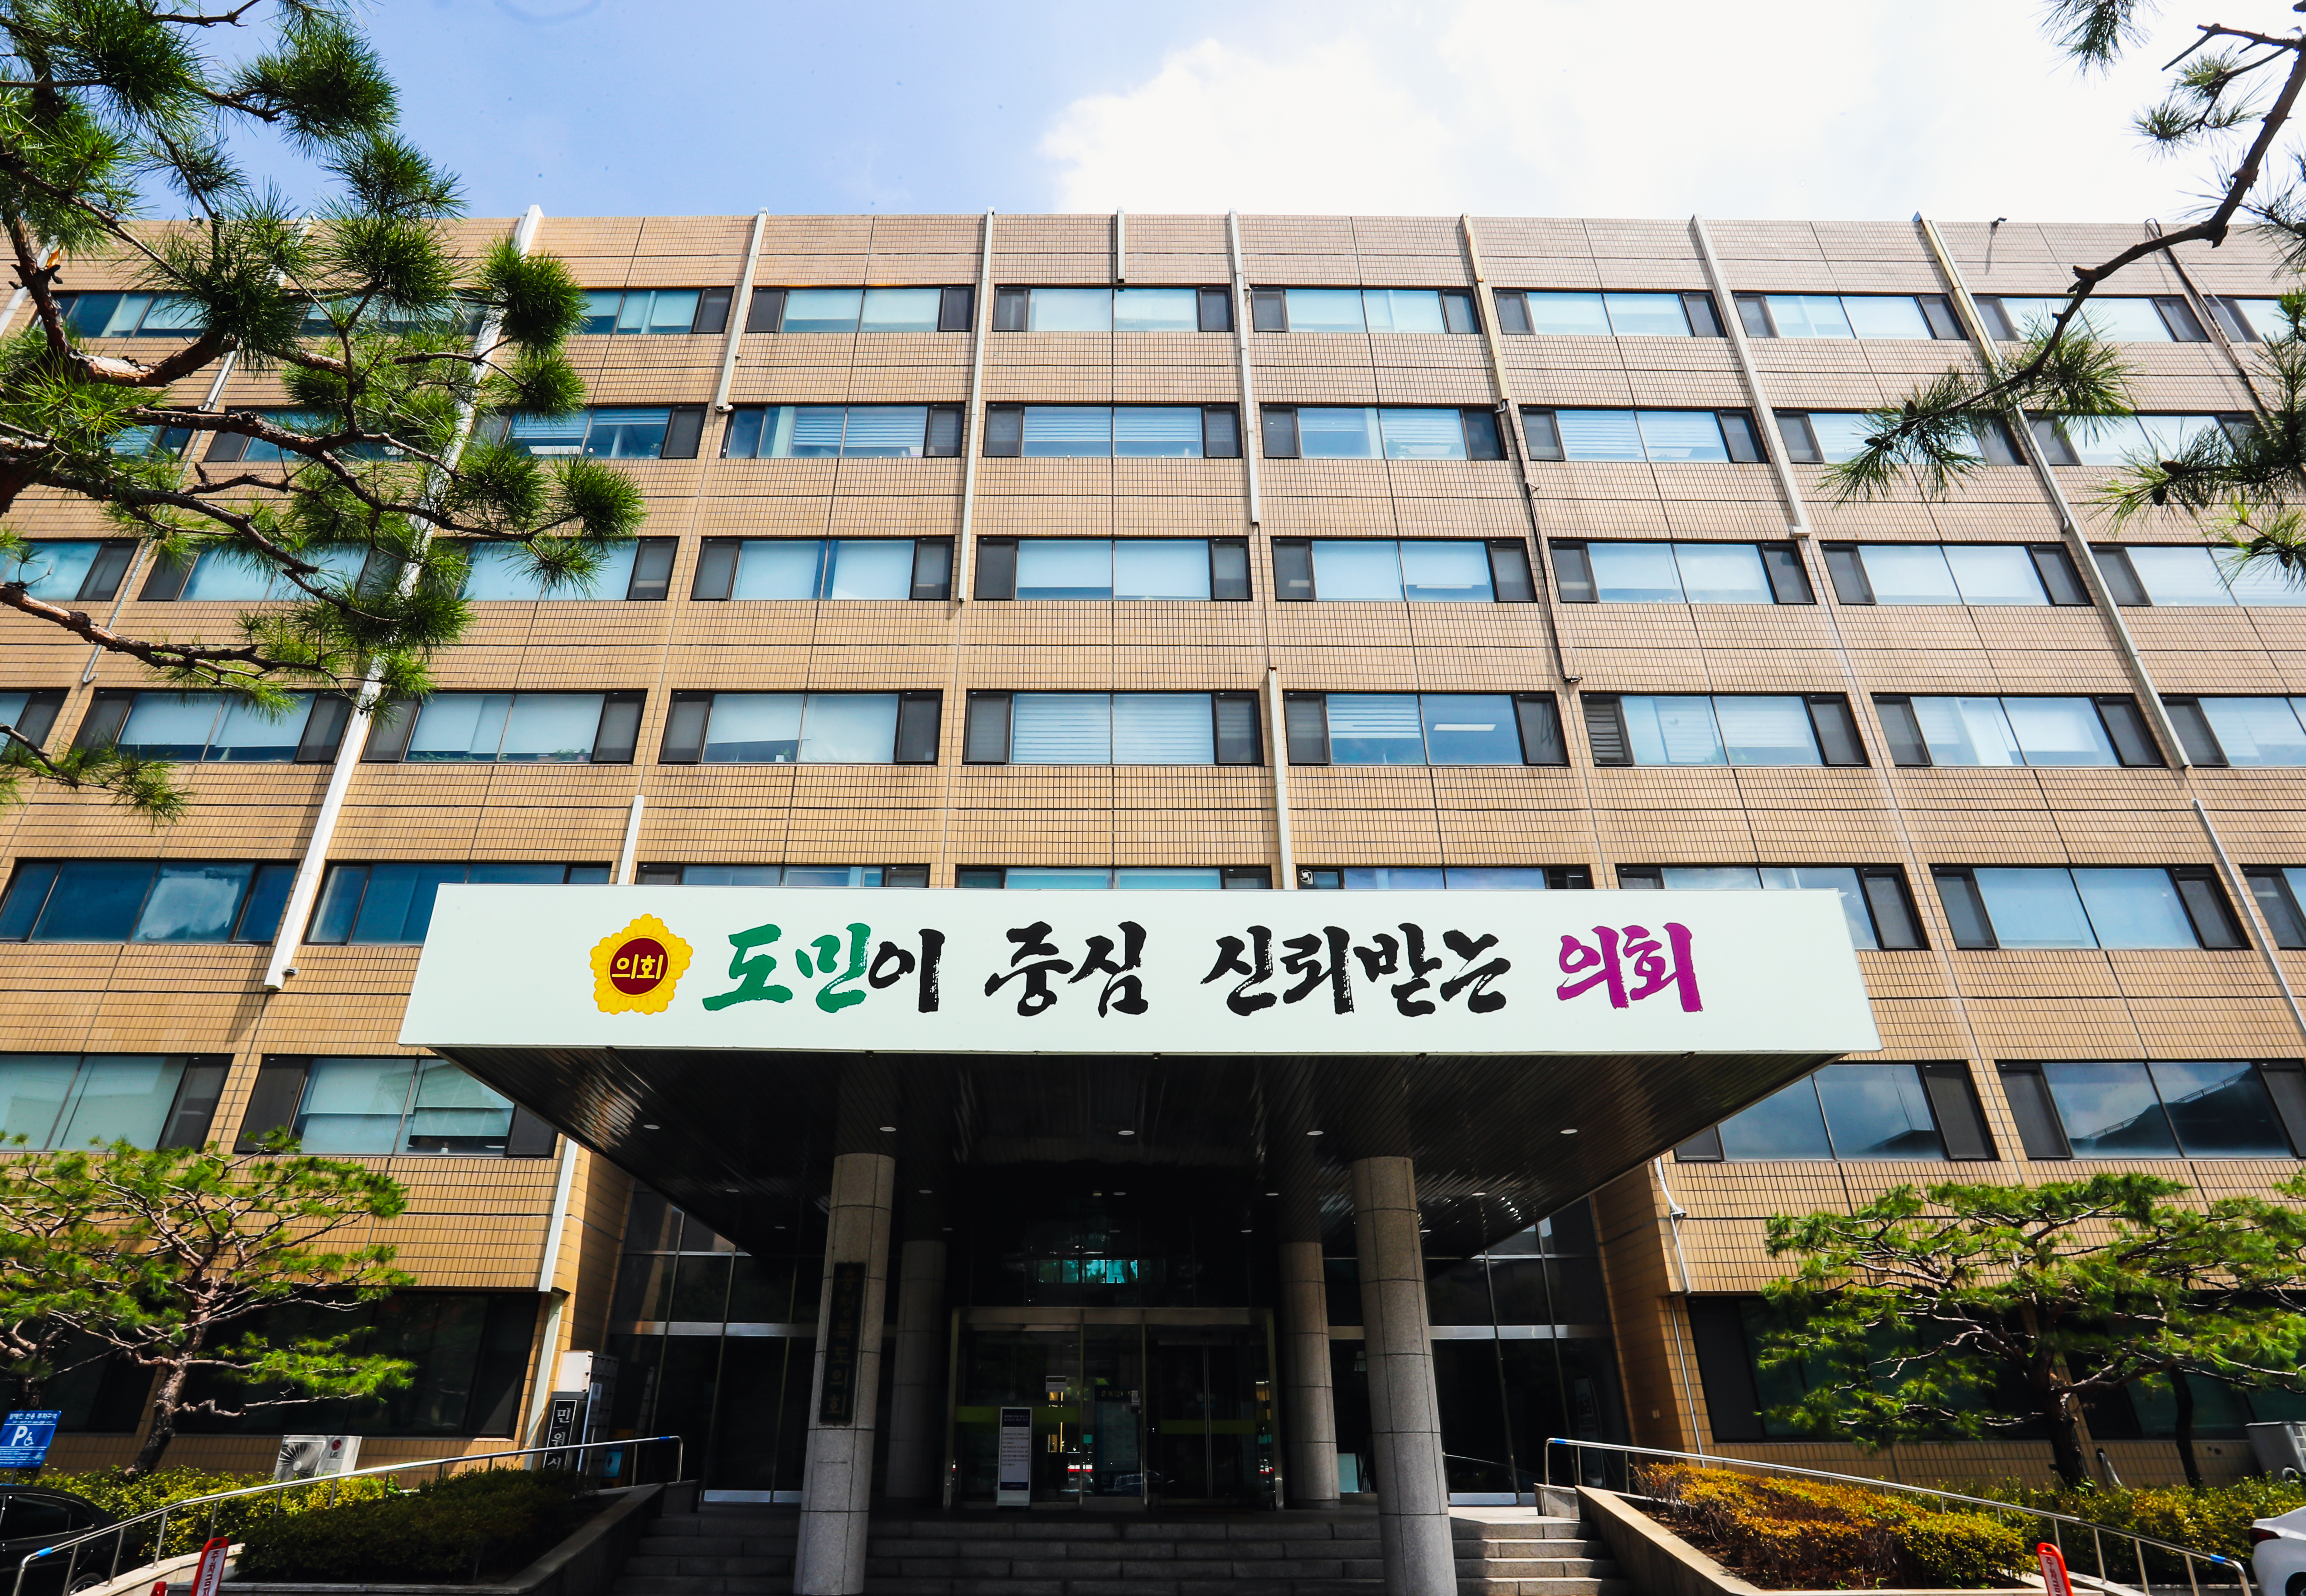 충북도의회 교육위원회, AI영재학교 설립 추진 간담회 개최 - 1